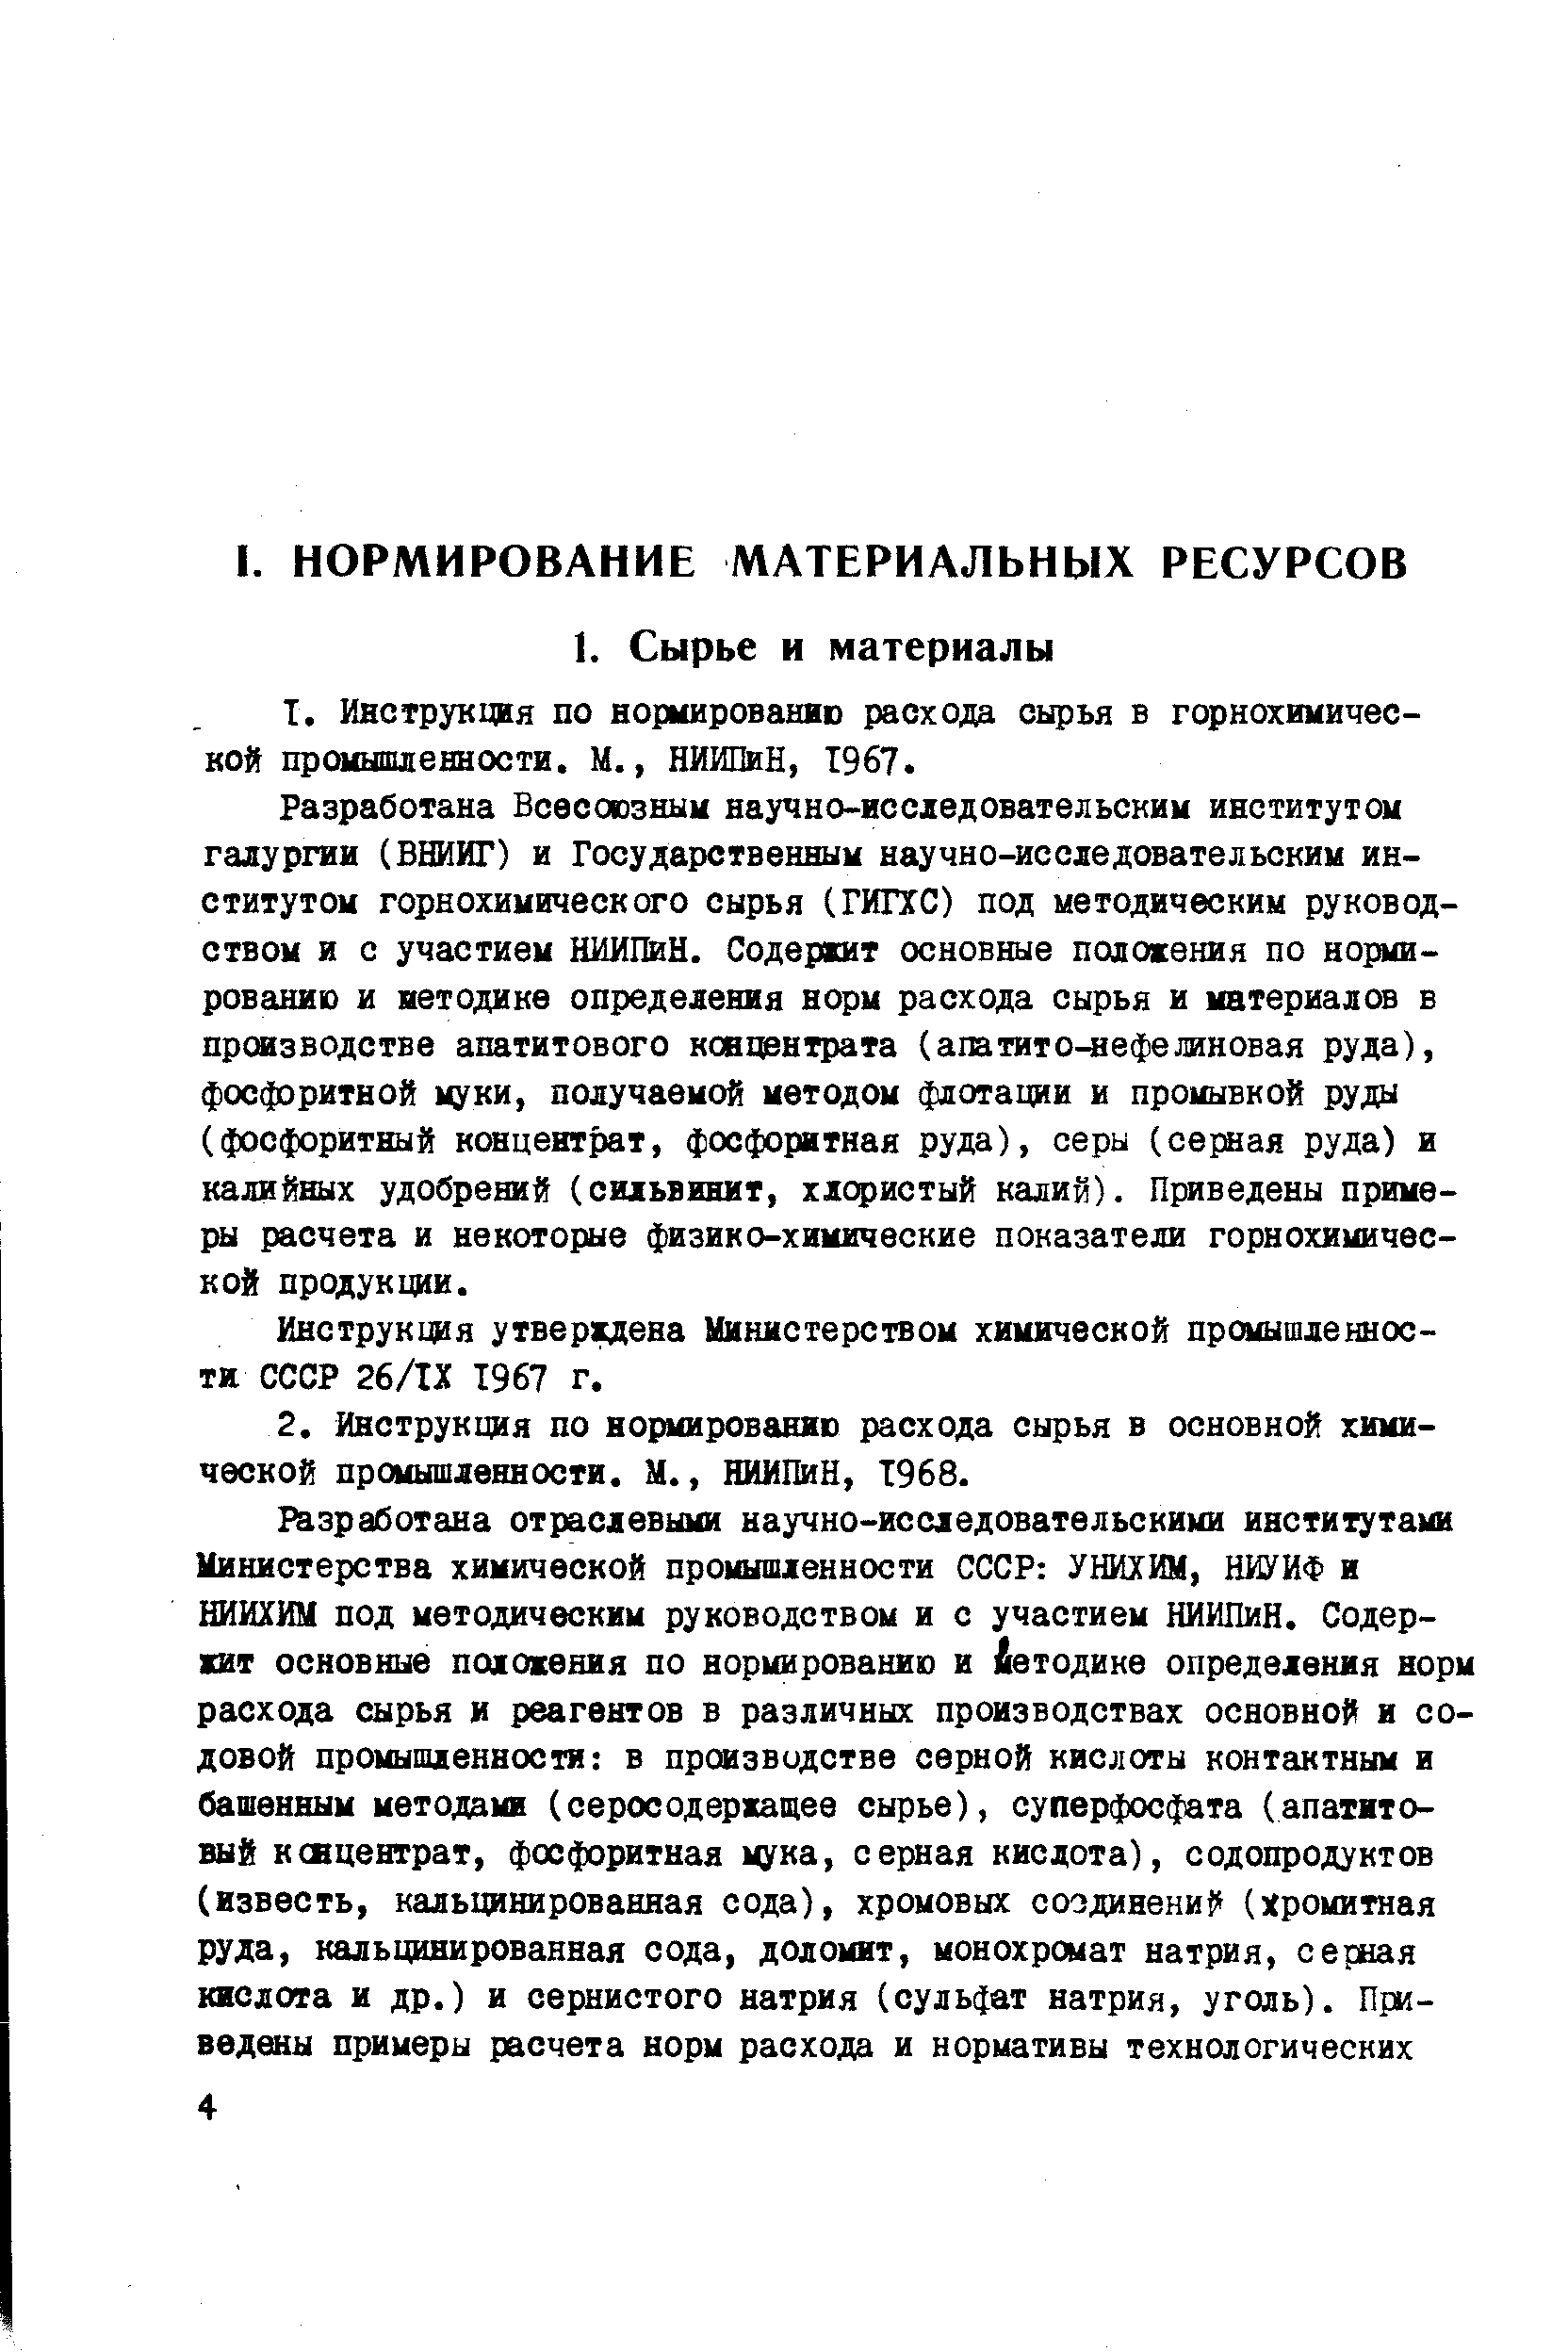 Инструкция утверждена Министерством химической промышленности СССР 26/ТХ 1967 г.
